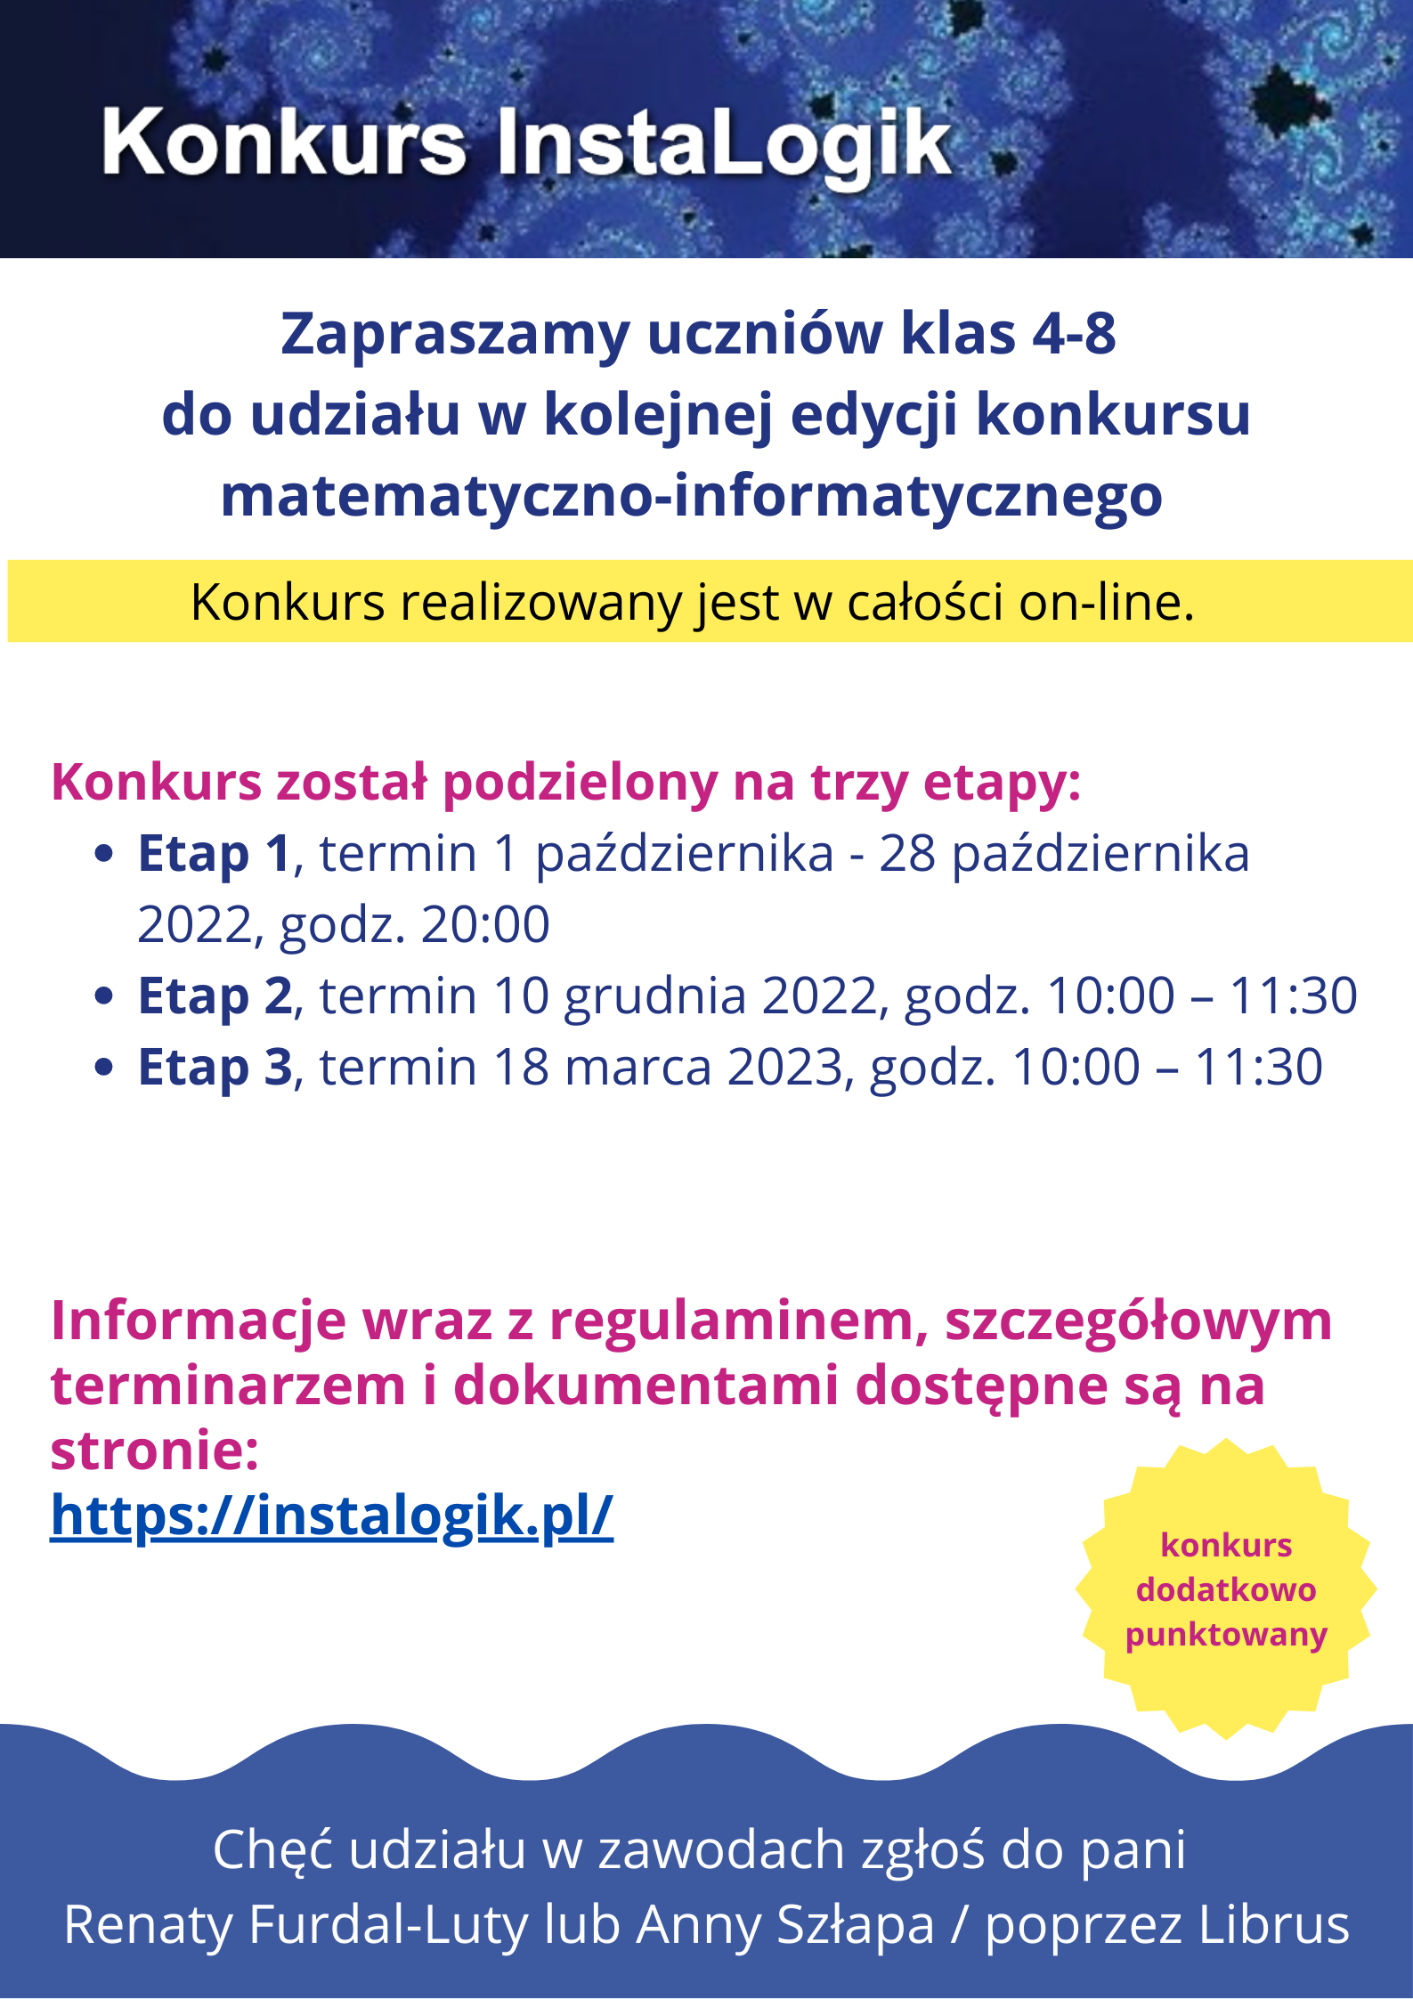 Plakat informacyjny o konkursie InstaLogik 2022